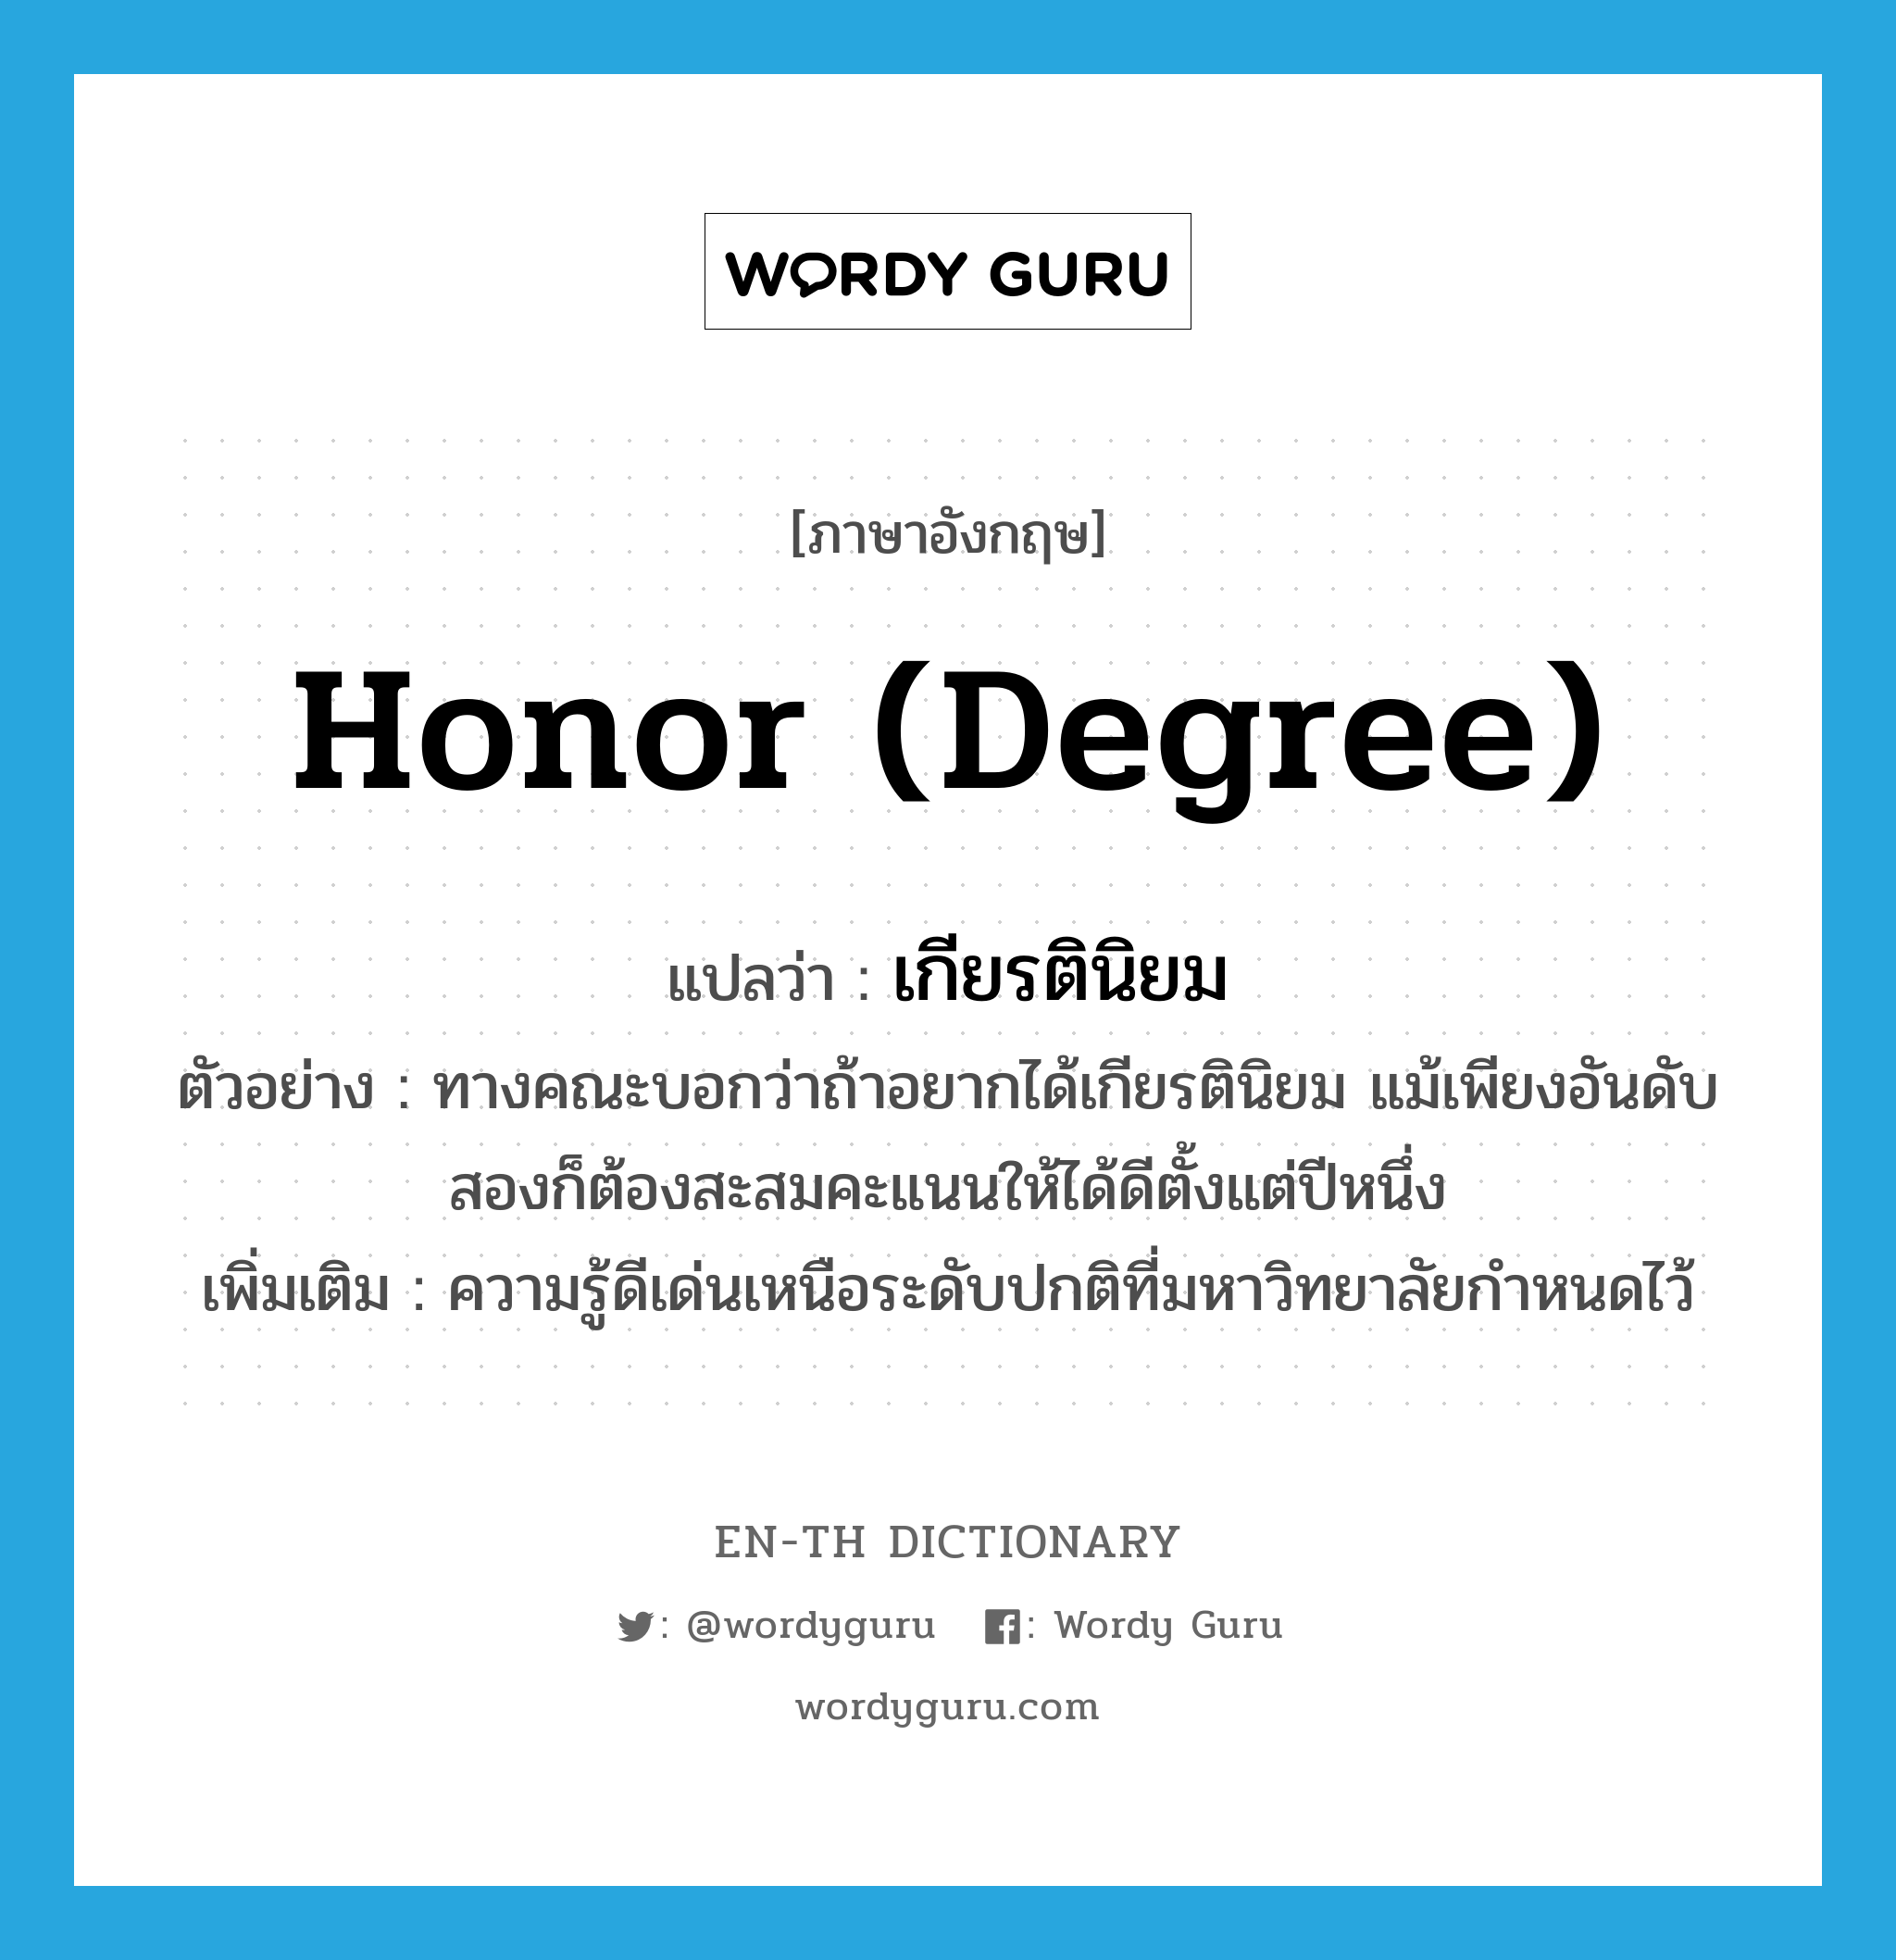 honor (degree) แปลว่า?, คำศัพท์ภาษาอังกฤษ honor (degree) แปลว่า เกียรตินิยม ประเภท N ตัวอย่าง ทางคณะบอกว่าถ้าอยากได้เกียรตินิยม แม้เพียงอันดับสองก็ต้องสะสมคะแนนให้ได้ดีตั้งแต่ปีหนึ่ง เพิ่มเติม ความรู้ดีเด่นเหนือระดับปกติที่มหาวิทยาลัยกำหนดไว้ หมวด N